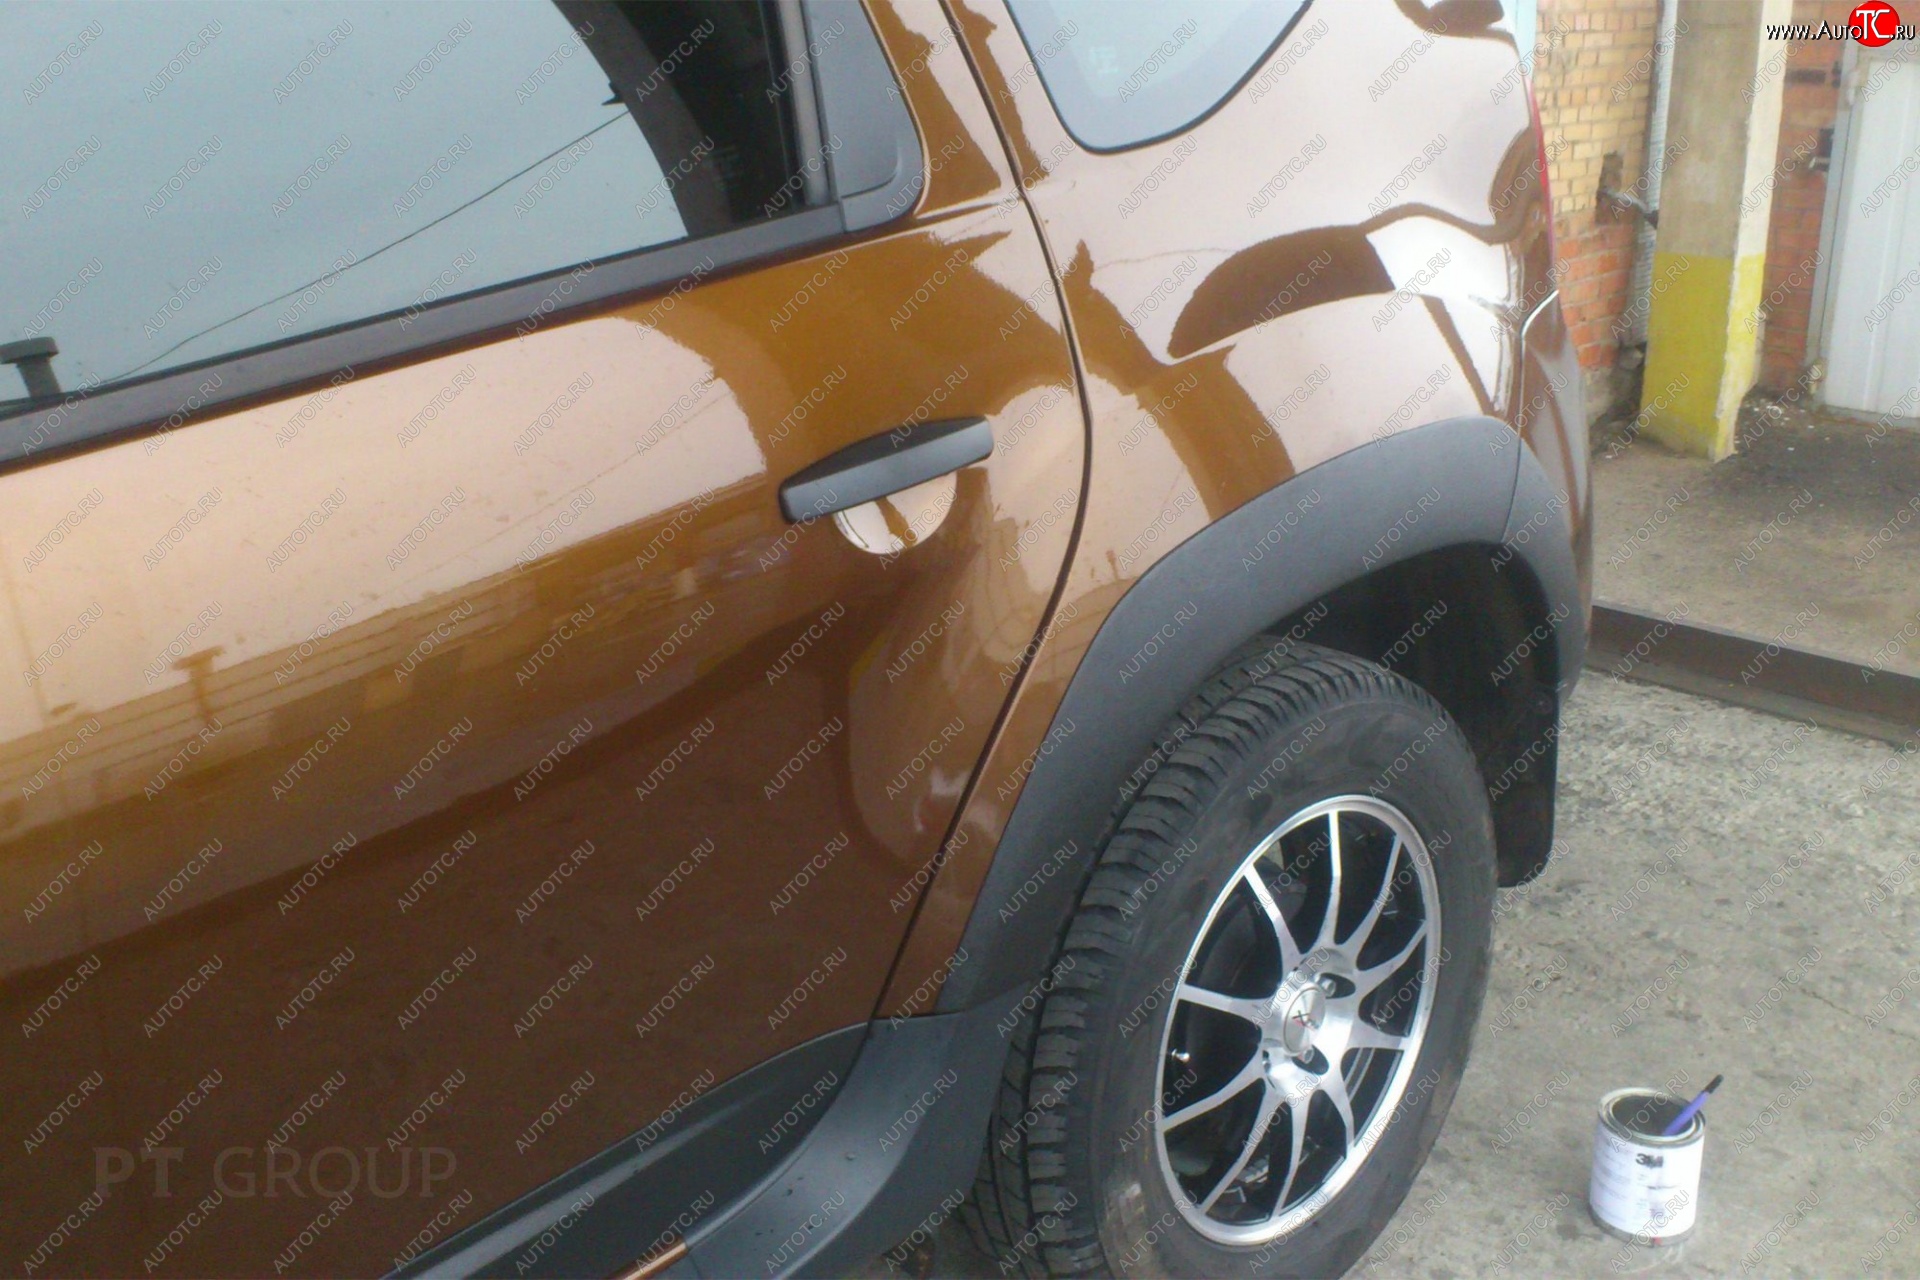 5 999 р. Комплект накладок на колёсные арки Petroil Tuning  Renault Duster  HS (2015-2021) (Текстурная поверхность)